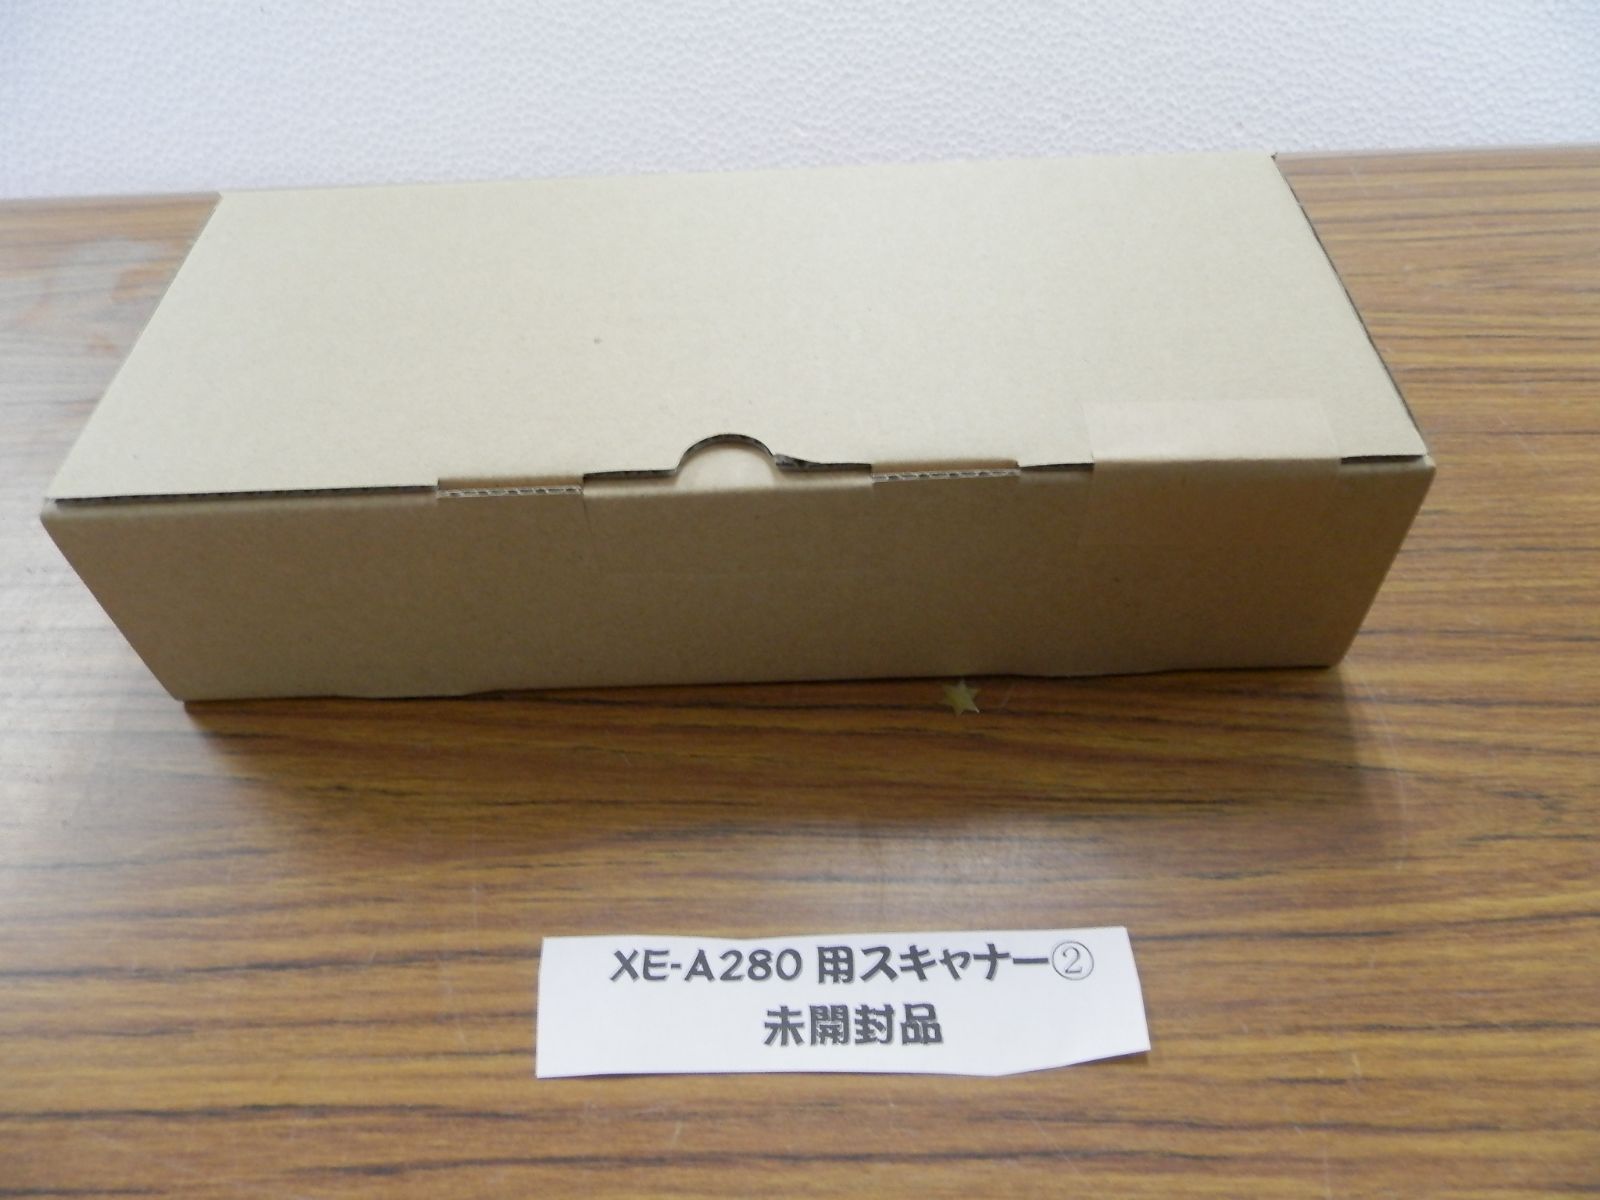 シャープ 電子レジスタ 20部門 スキャナ付 XE-A280 - 4